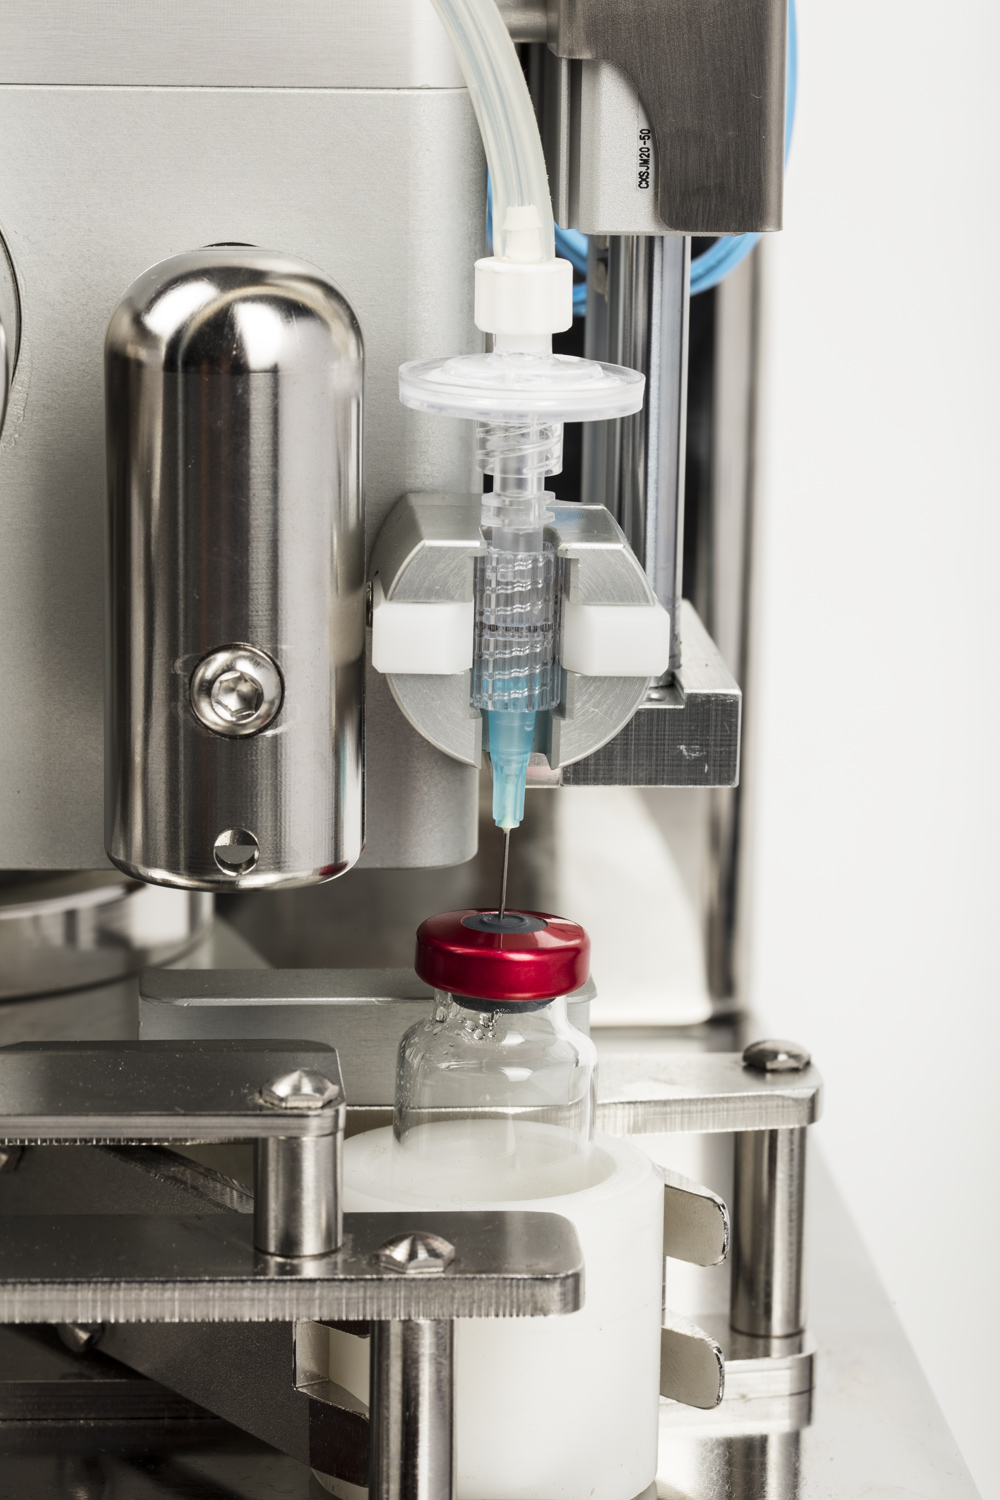 CRP automatisch uitvulsysteem voor vials